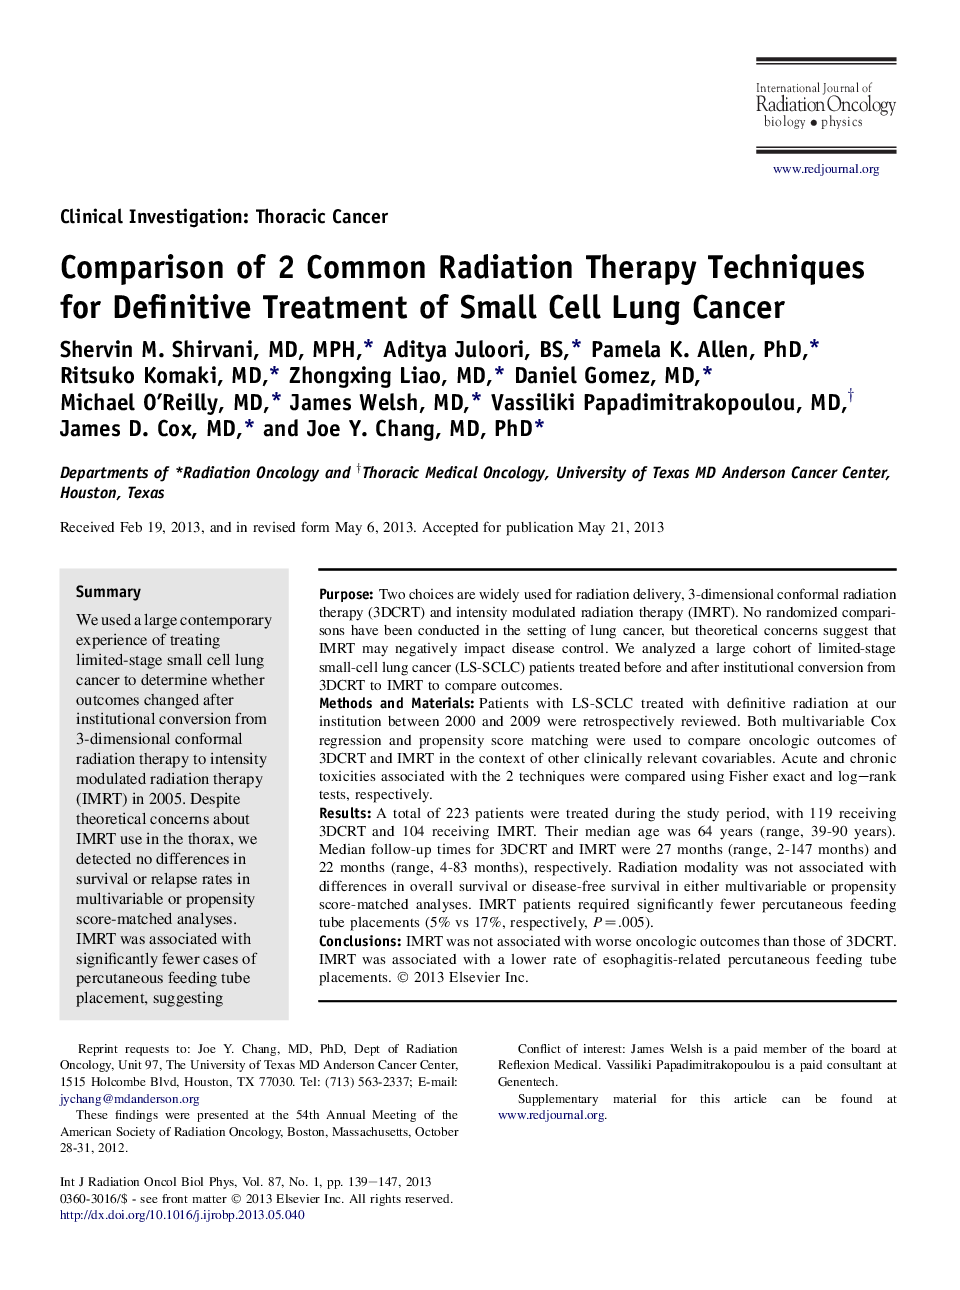 مقایسه دو تکنیک رادیوتراپی مشترک برای درمان قطعی سرطان ریه های کوچک سلولی 